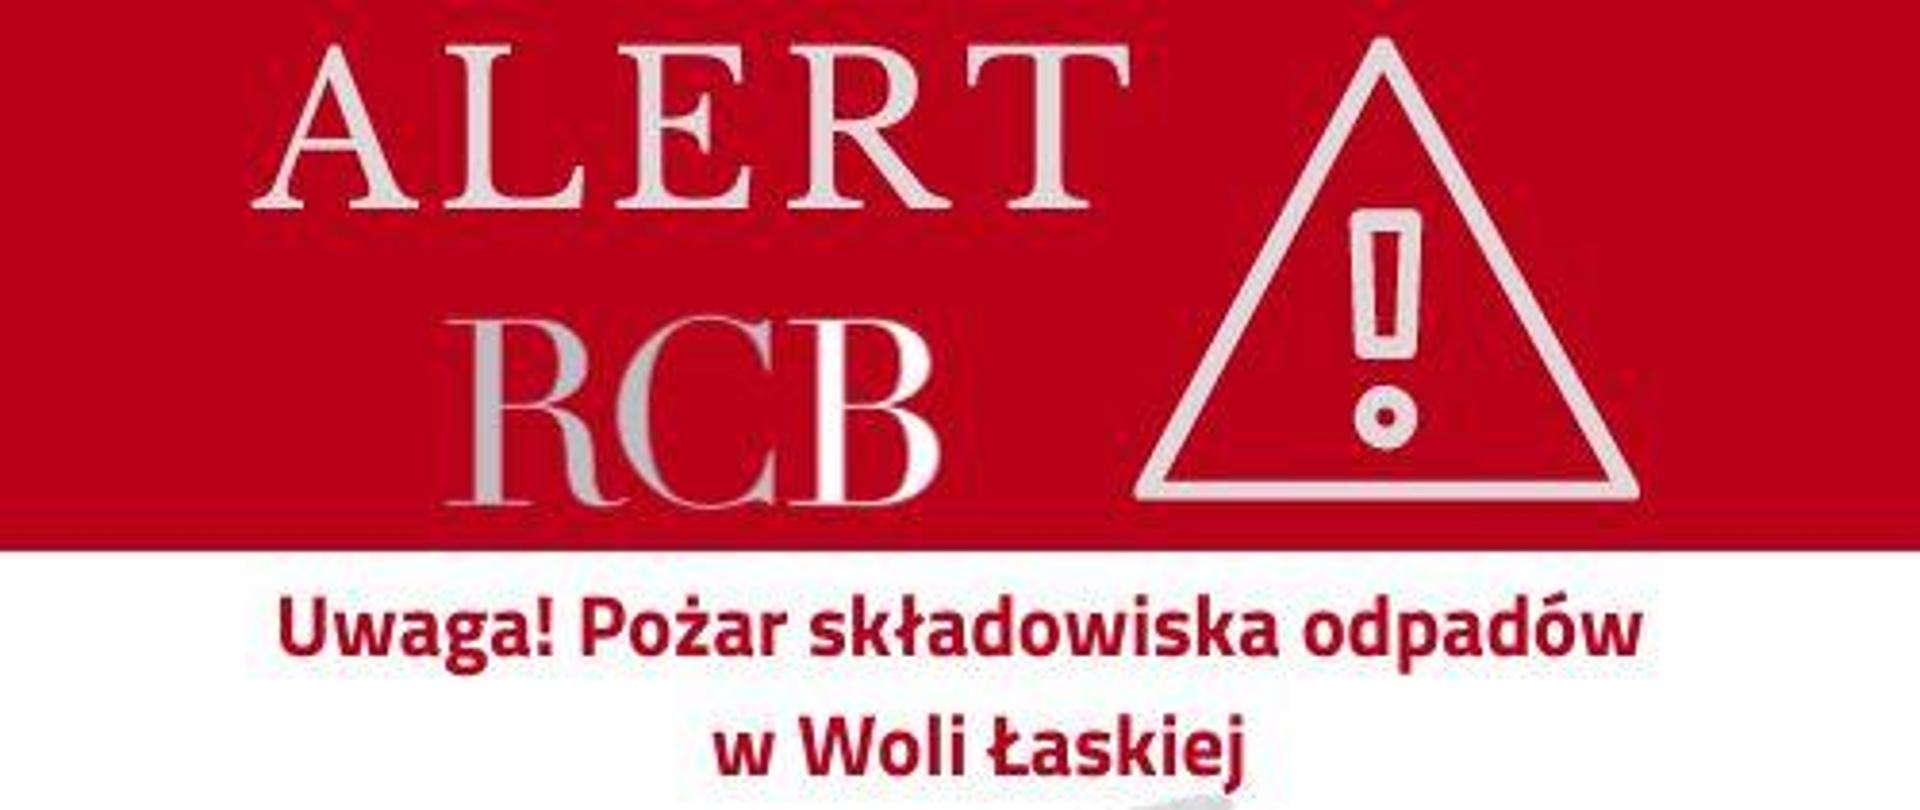 Alert RCB - pożar składowiska odpadów w Woli Łaskiej 